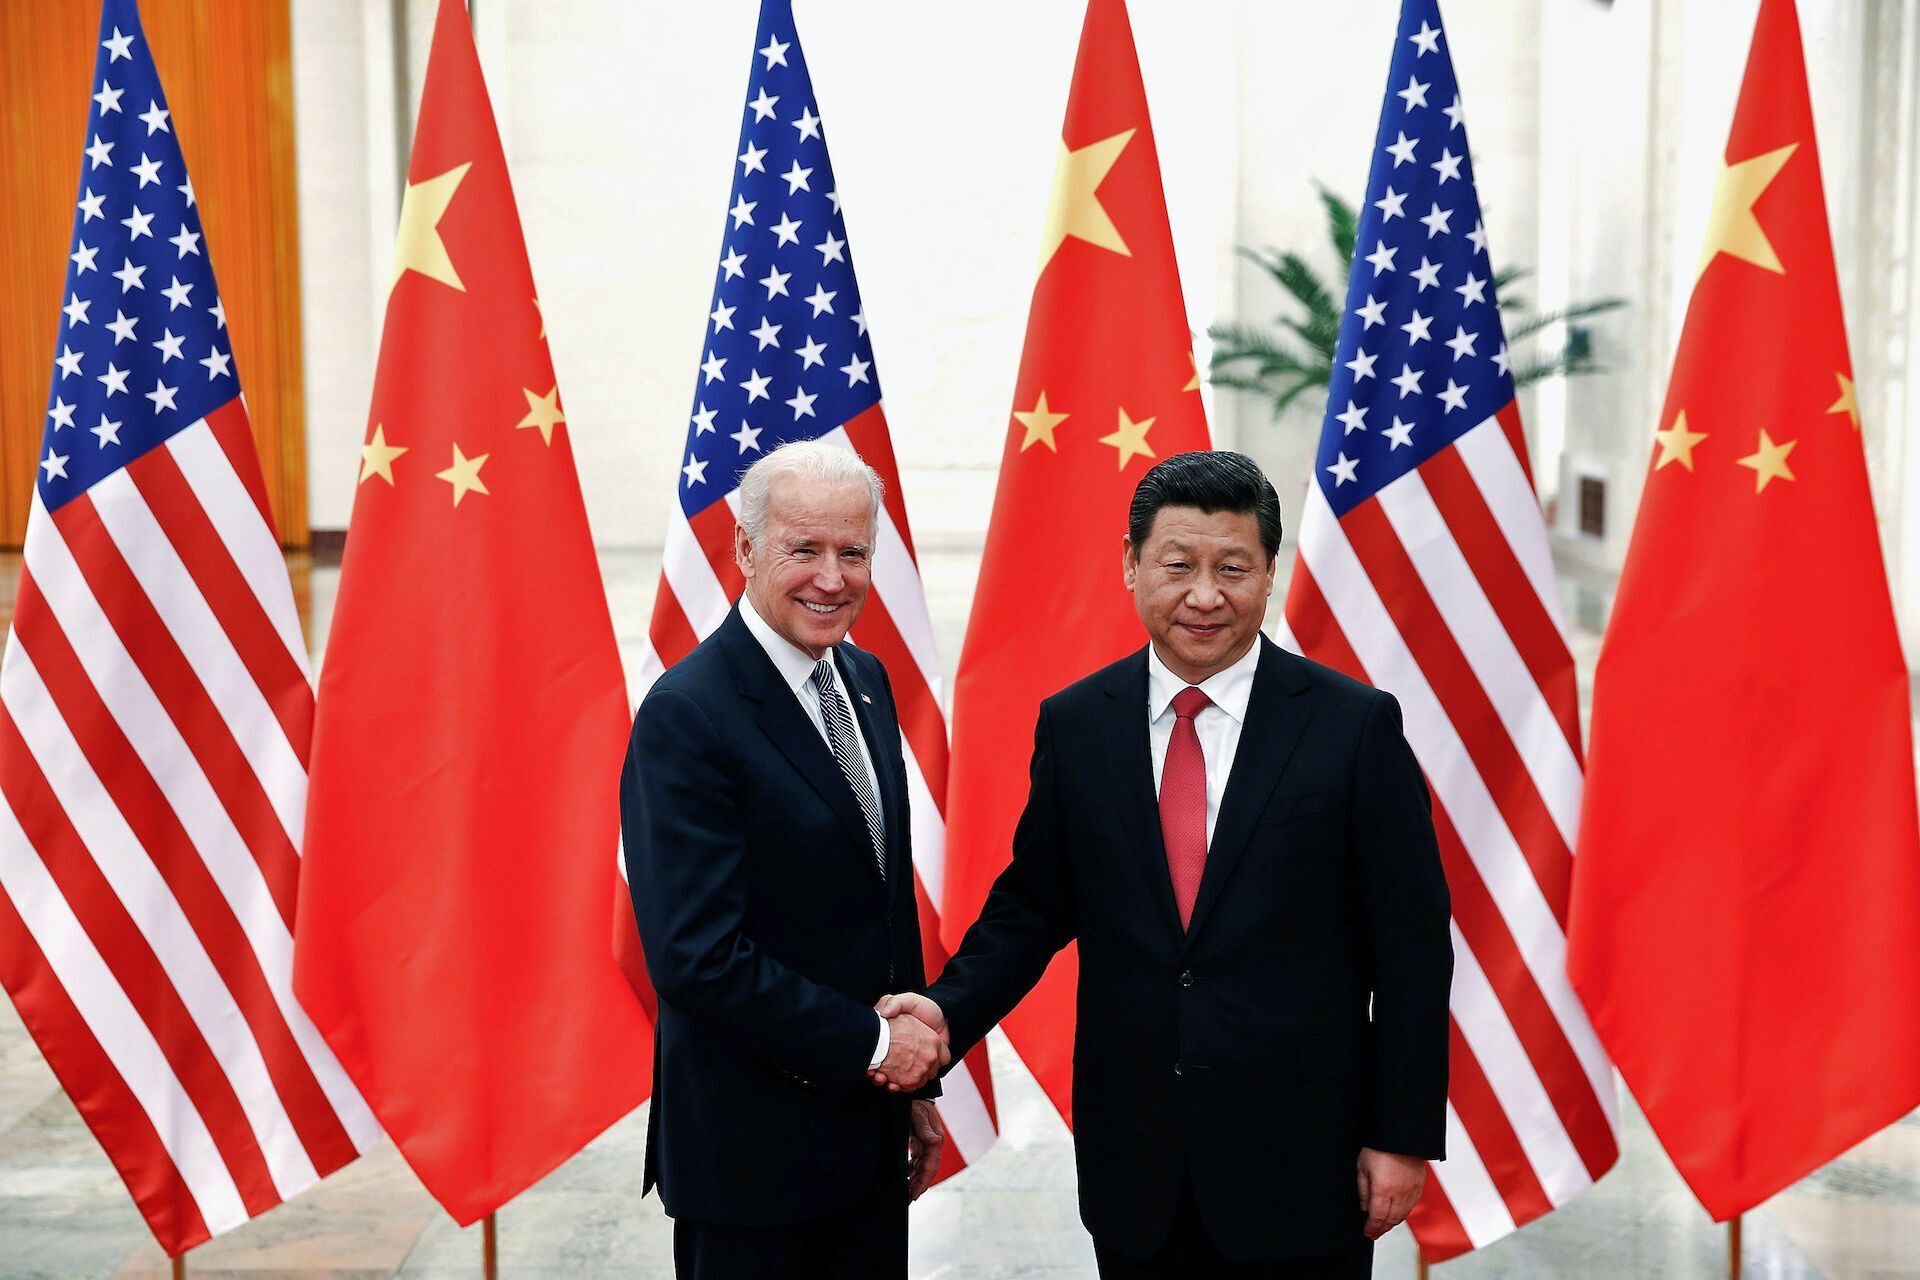 Байден назвал президента Си Цзиньпина диктатором через день после визита Блинкена в Китай: в Пекине отреагировали